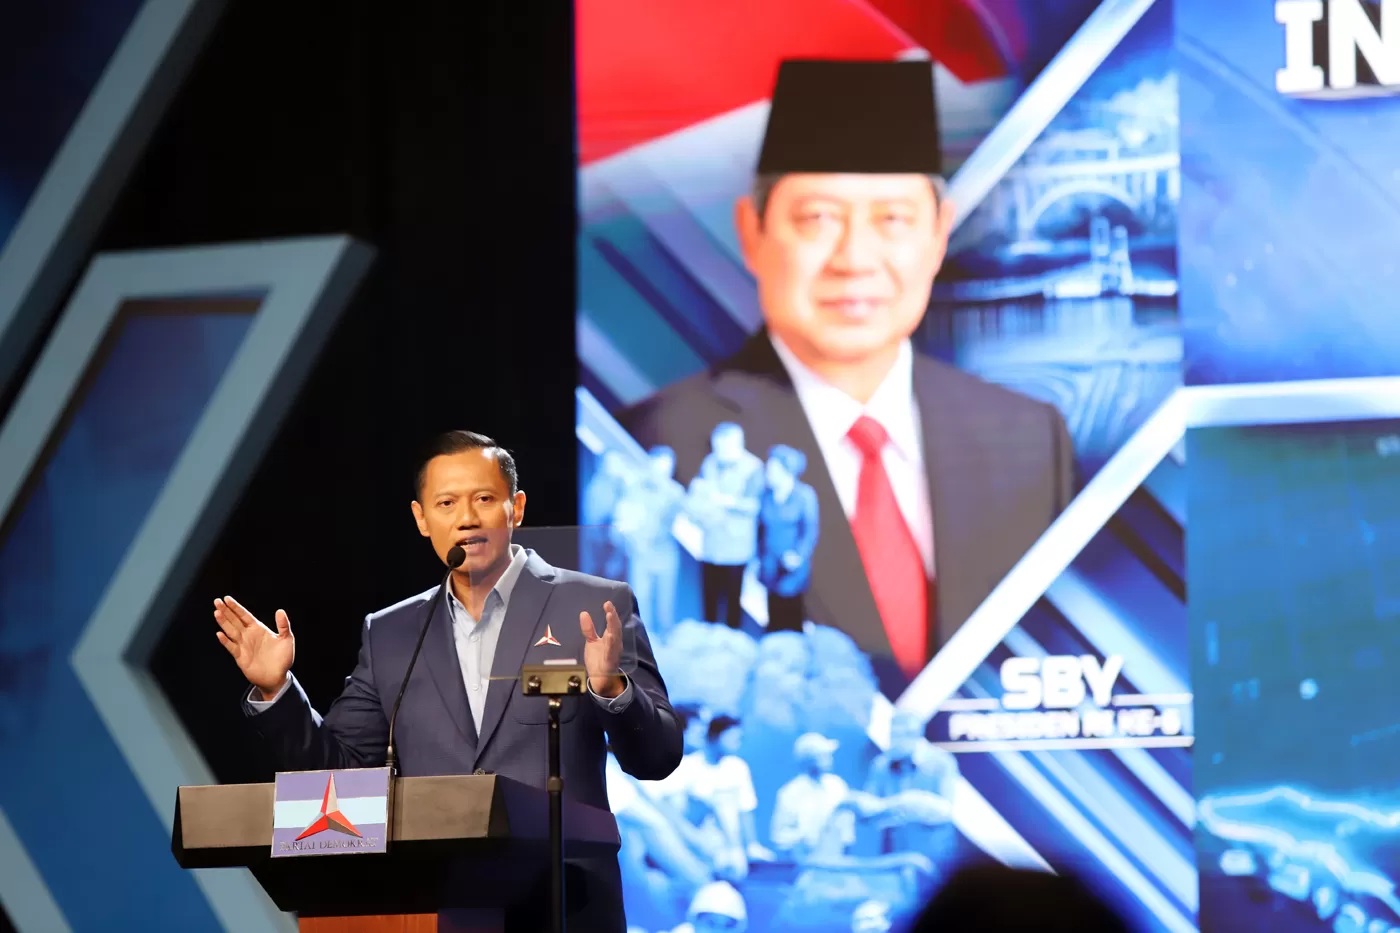 Ketua Umum Partai Demokrat Agus Harimurti Yudhoyono (AHY) dikabarkan akan dilantik menjadi Menteri Agraria dan Tata Ruang/Badan Pertanahan Nasional (ATR/BPN) oleh Presiden Joko Widodo (Jokowi)